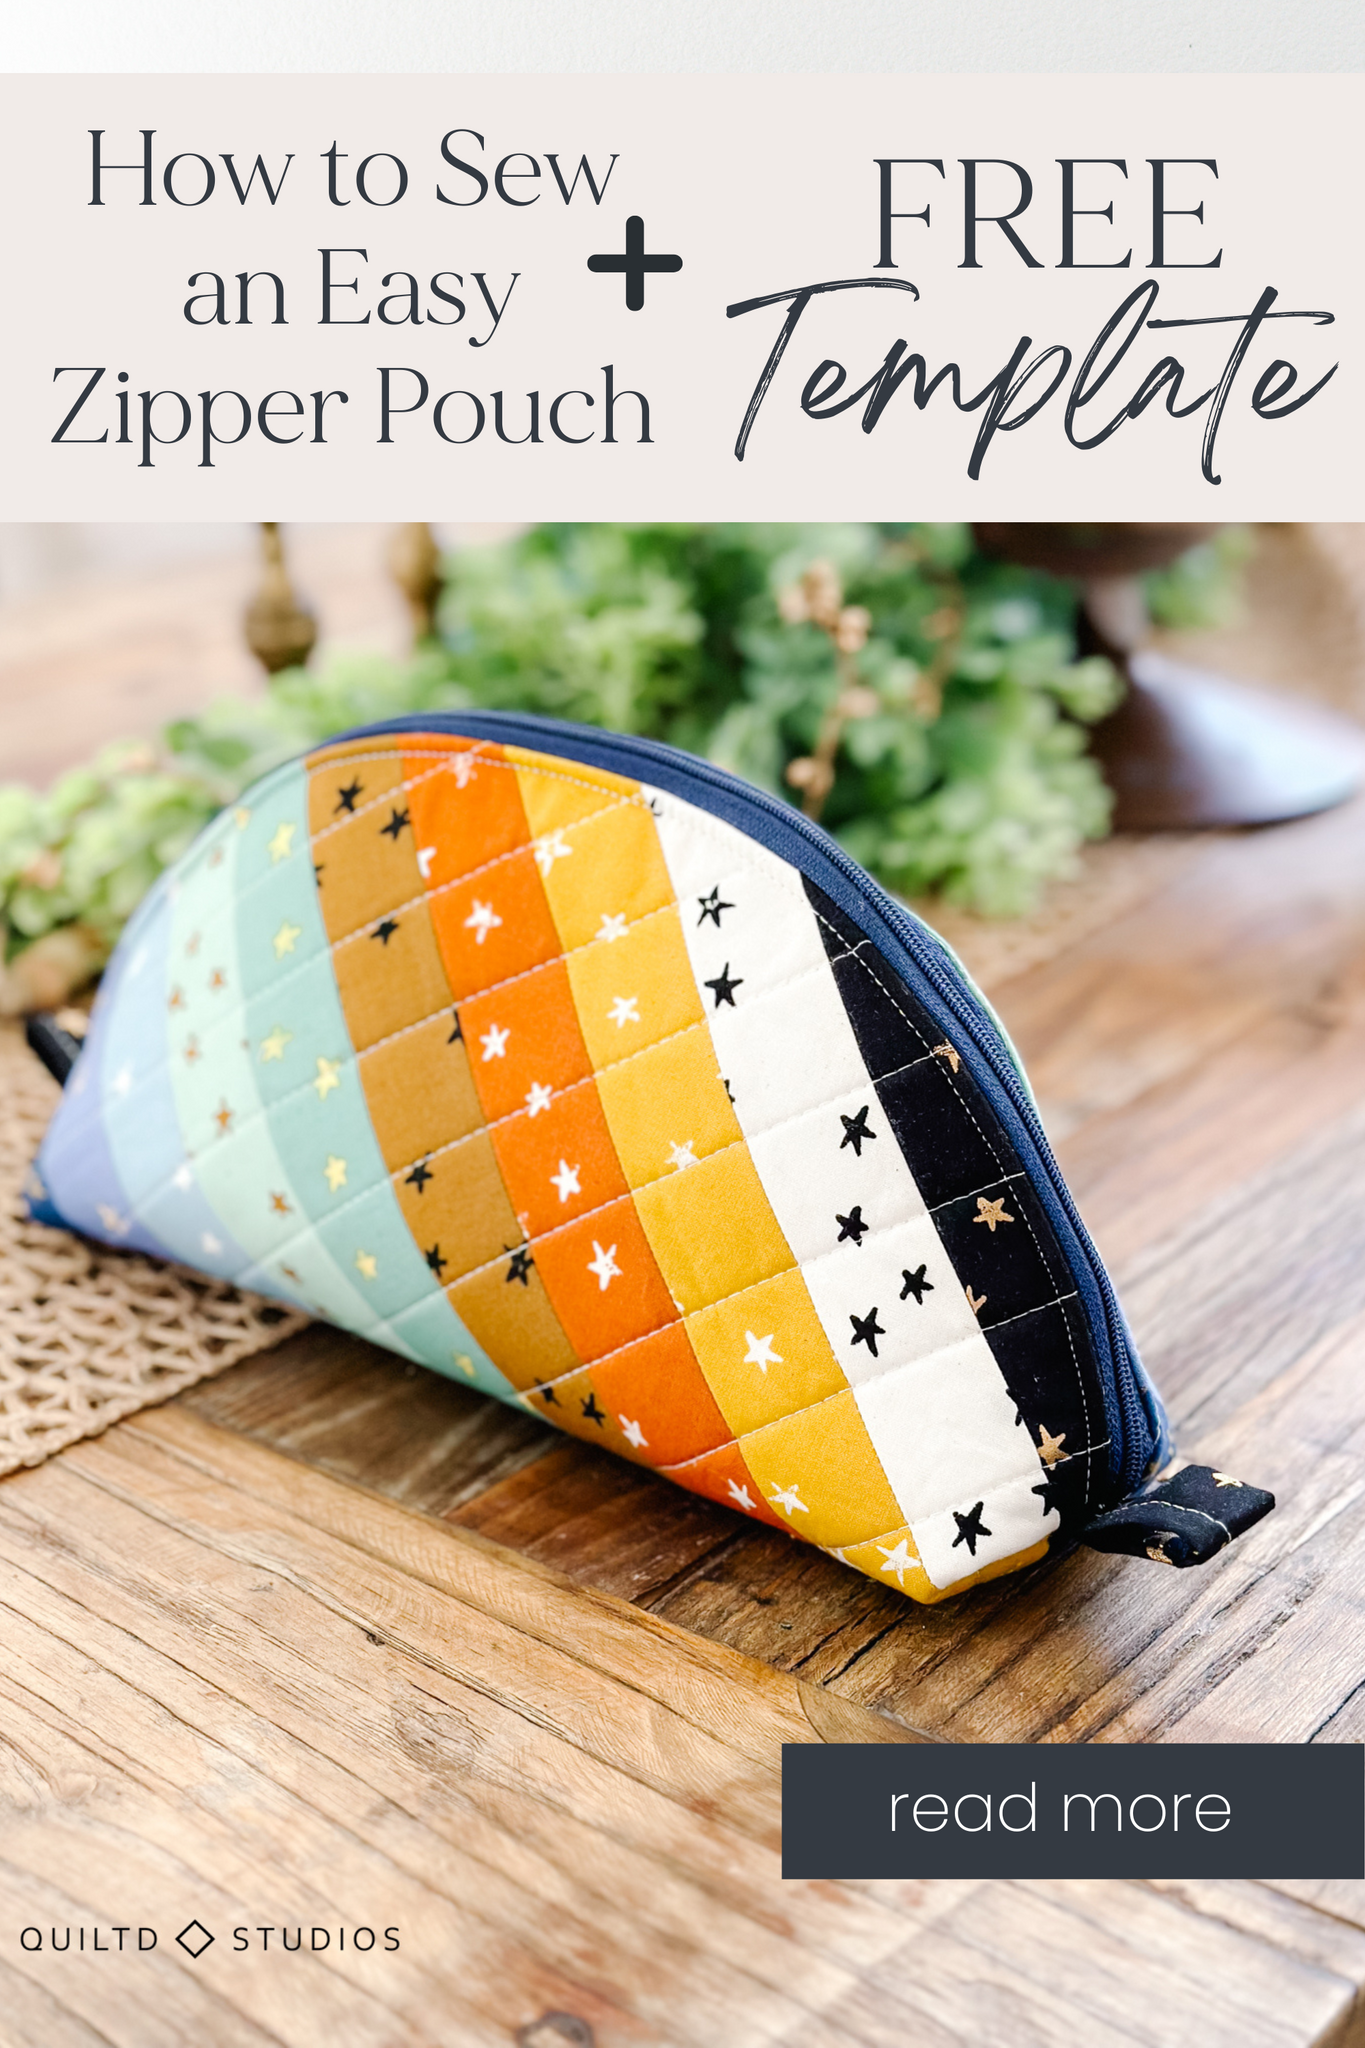 The Zipper Pouch Tutorial